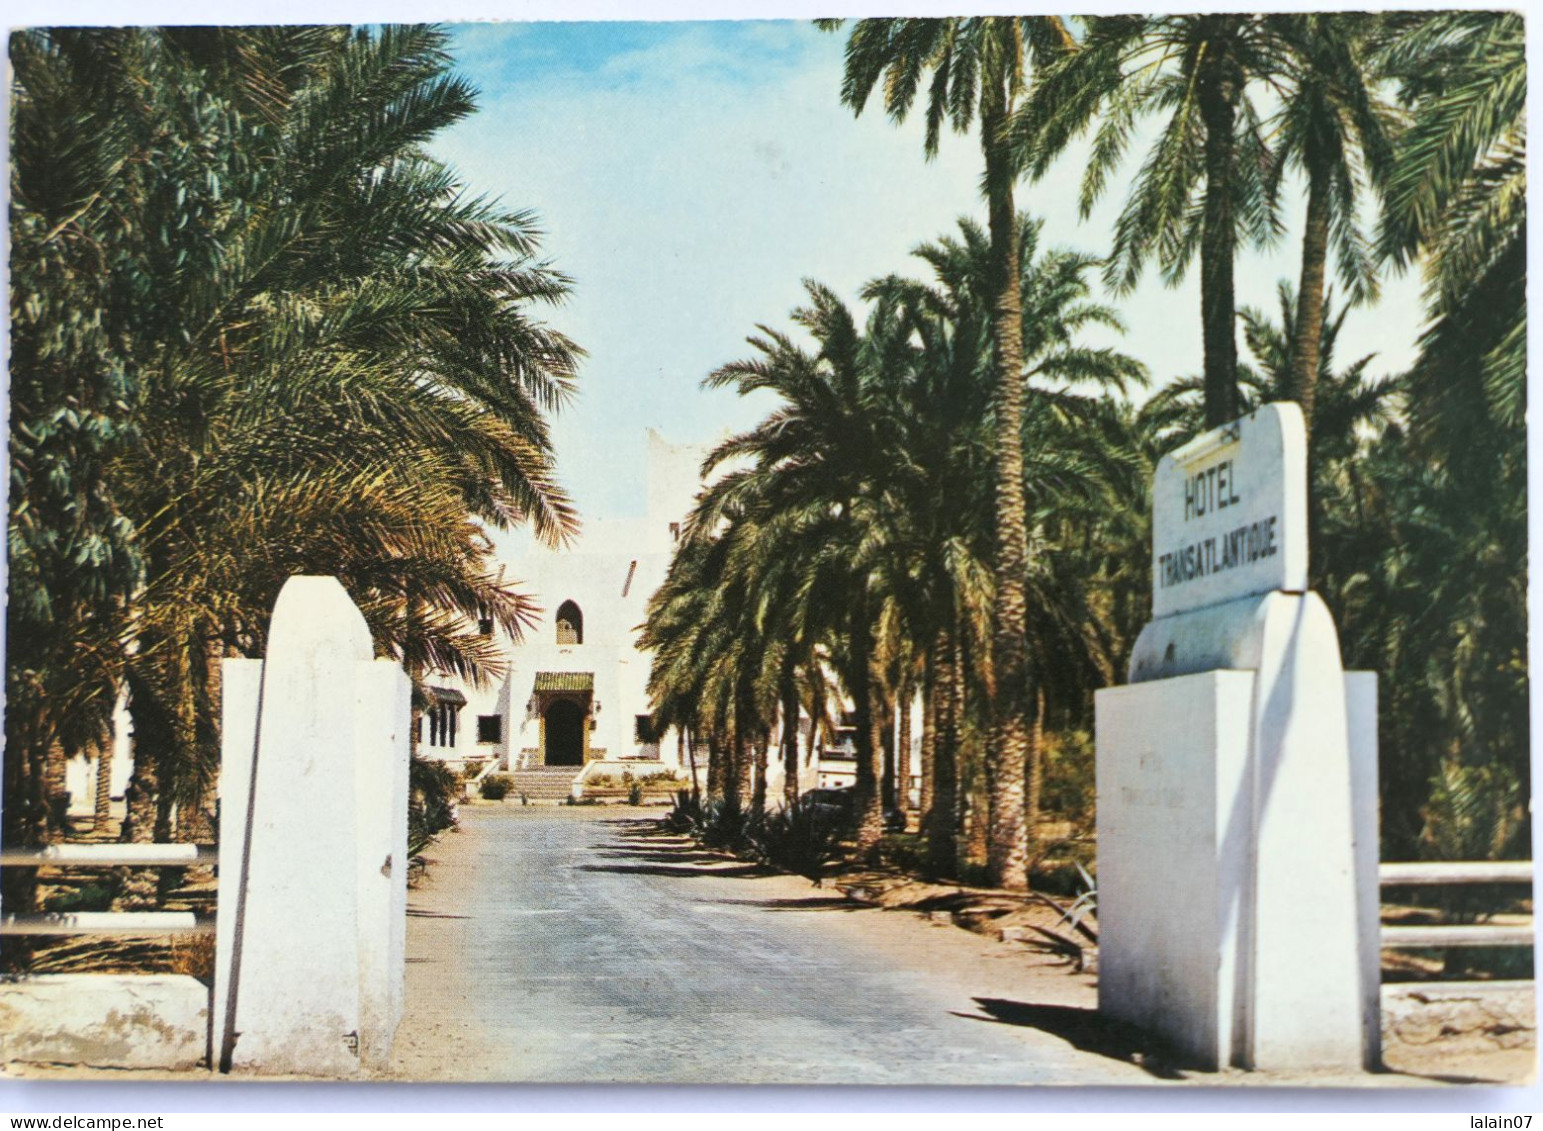 Carte Postale : Algérie : TOUGGOURT : L'Hôtel Transatlantique, Timbre En 1980 - Sonstige & Ohne Zuordnung